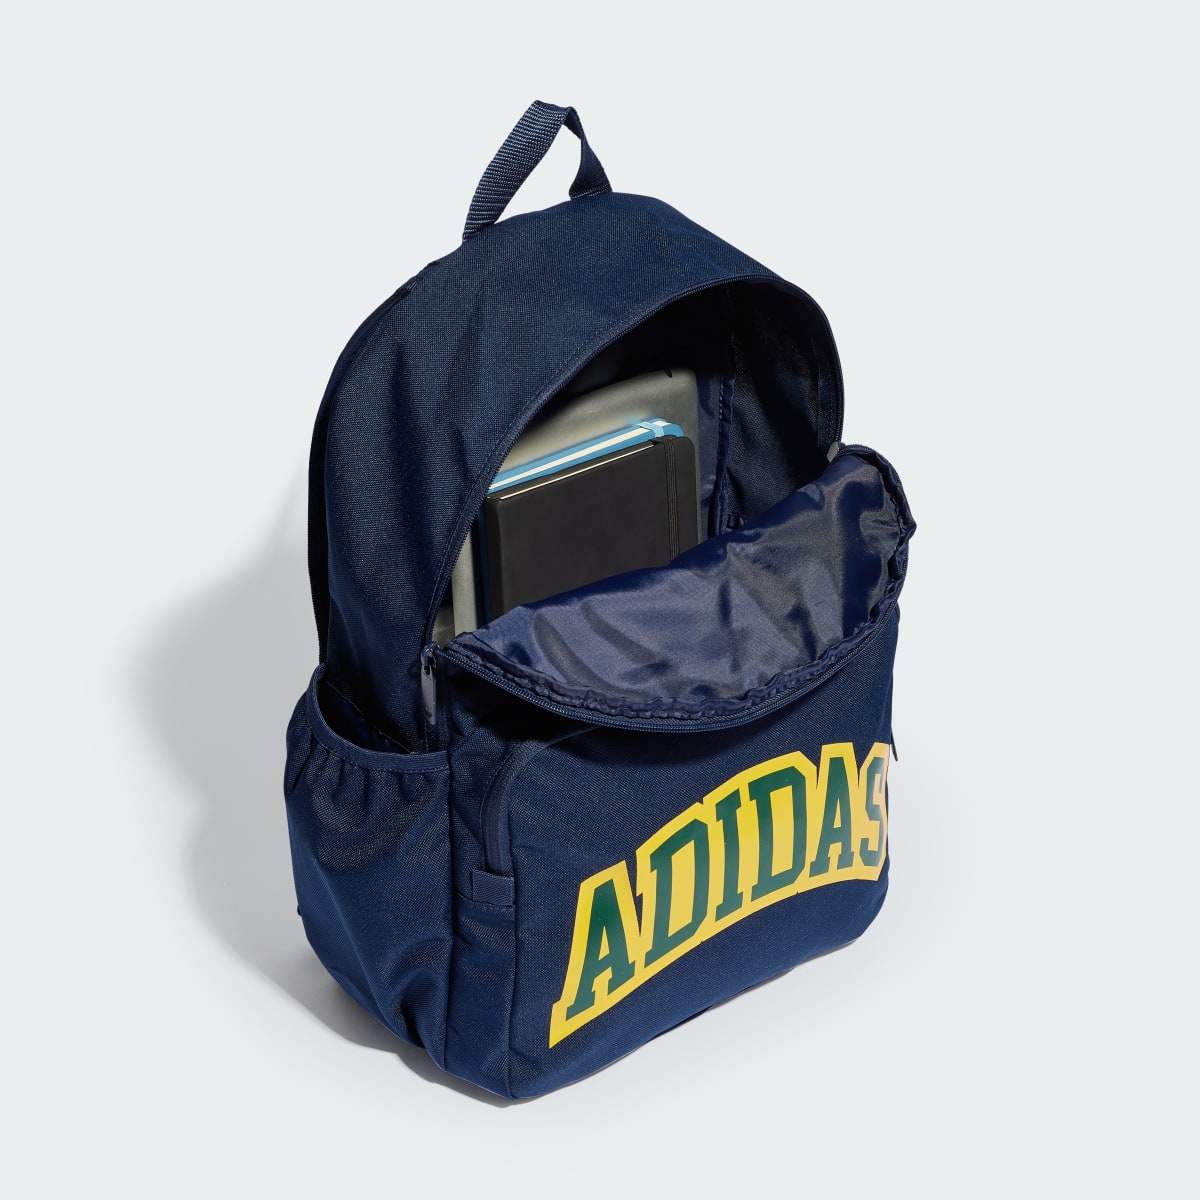 Adidas VRST Backpack. 4